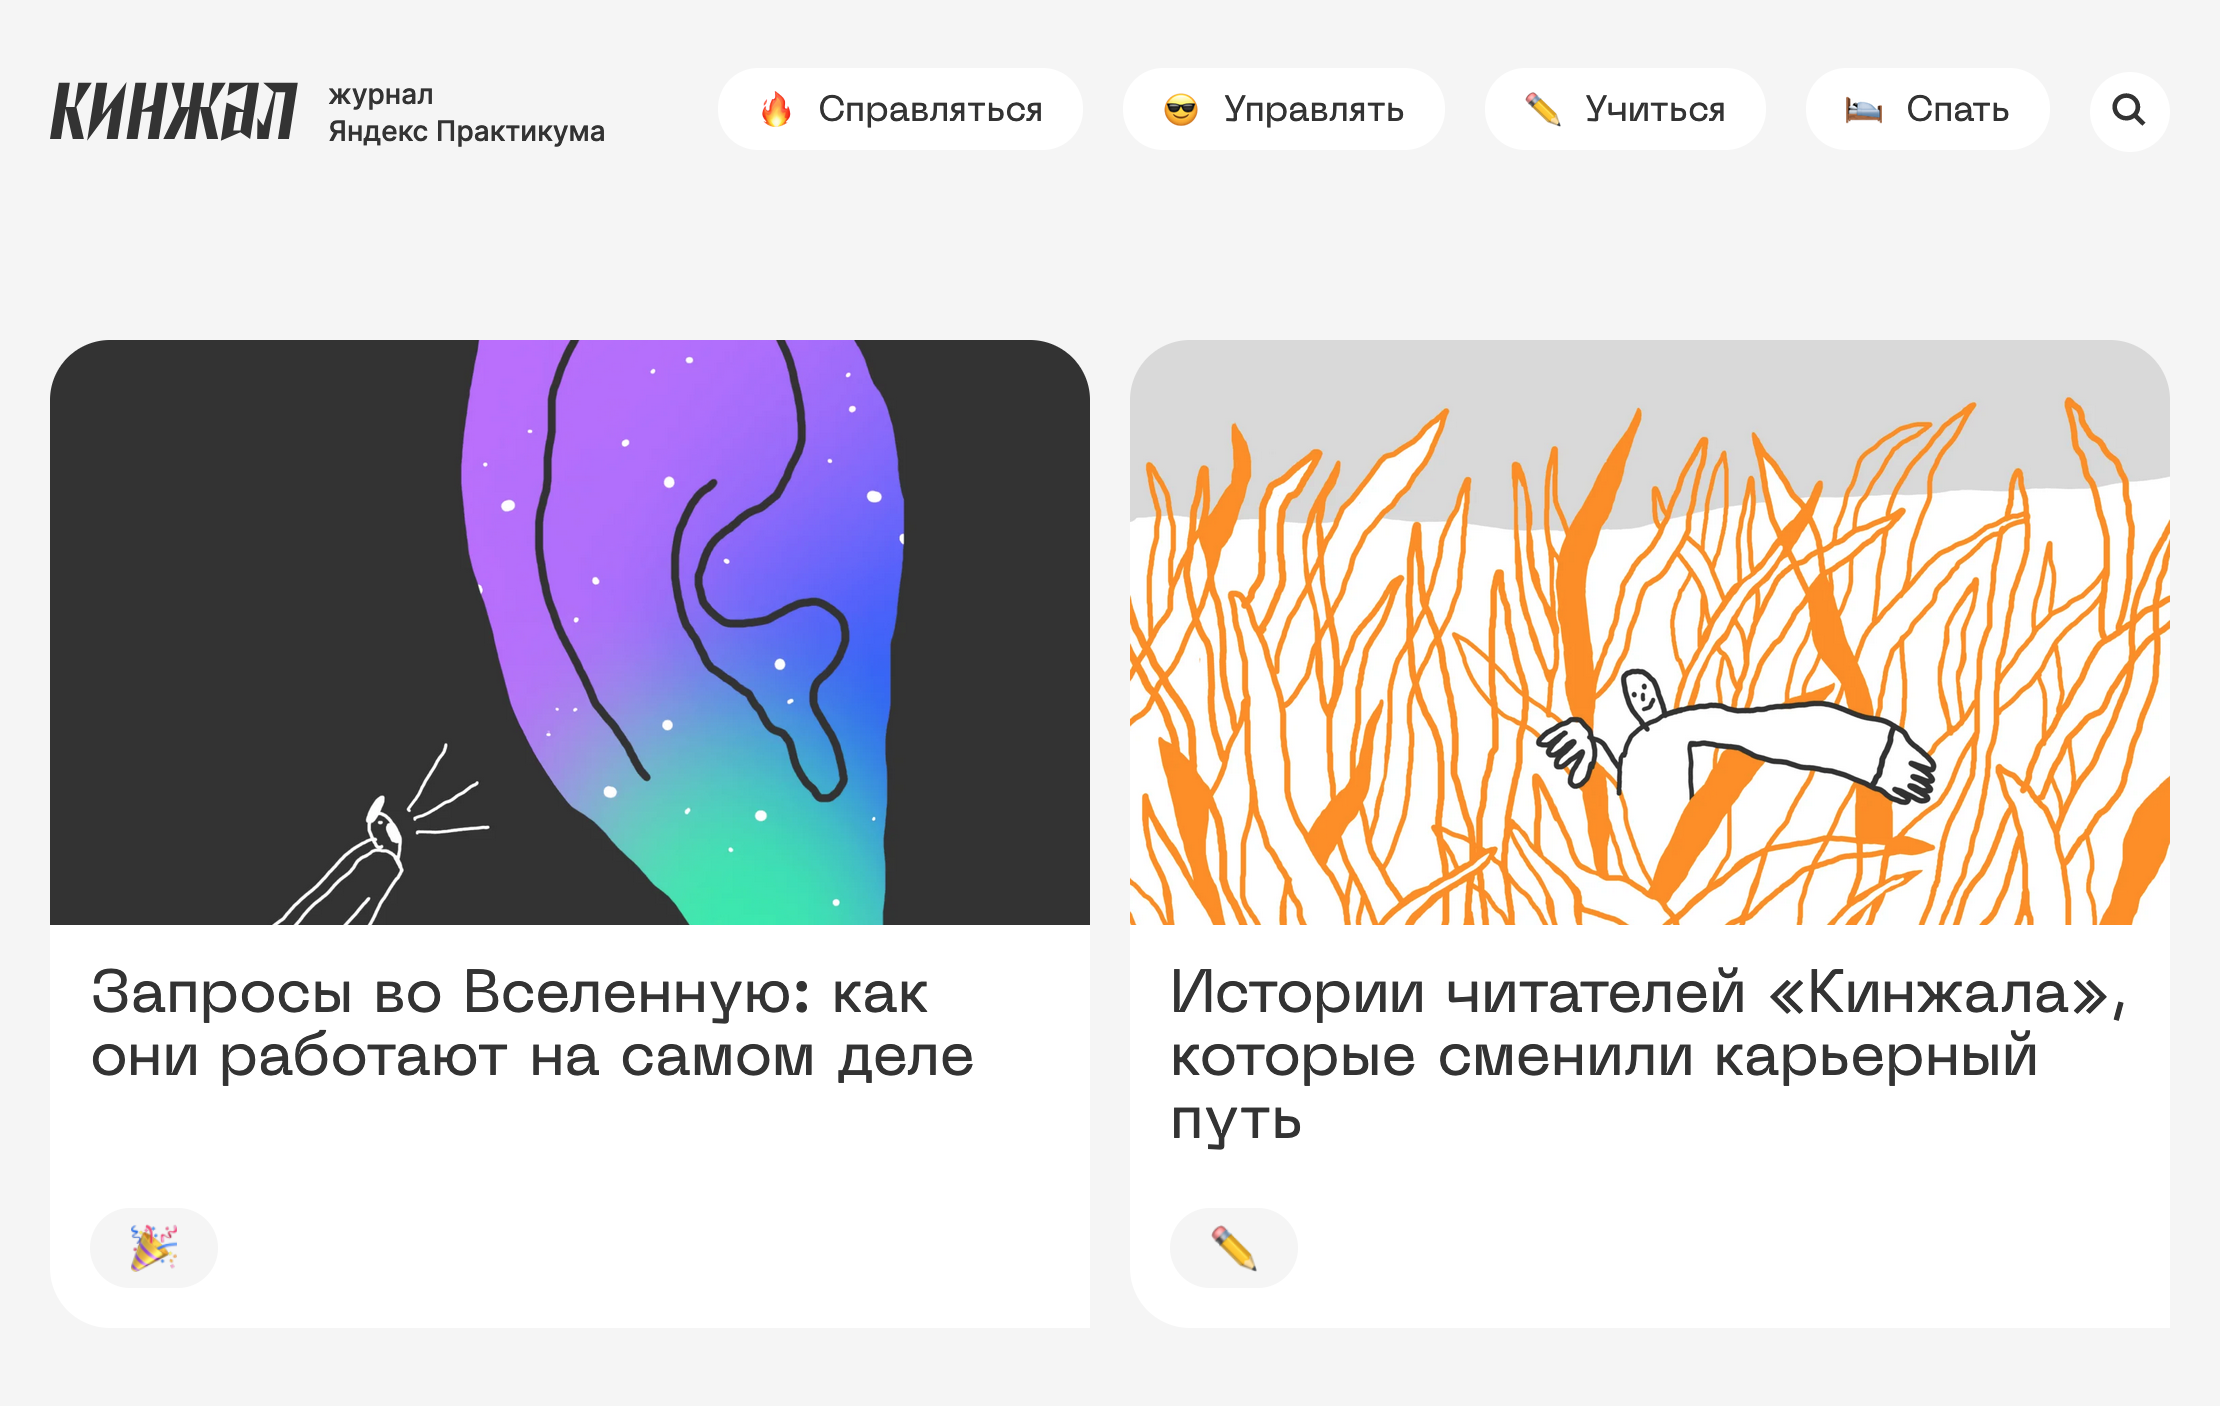 Это журнал «Яндекс Практикума»: отдельное бренд⁠-⁠медиа о софт⁠-⁠скиллах, переговорах и трудных рабочих вопросах. Источник: kinzhal.media